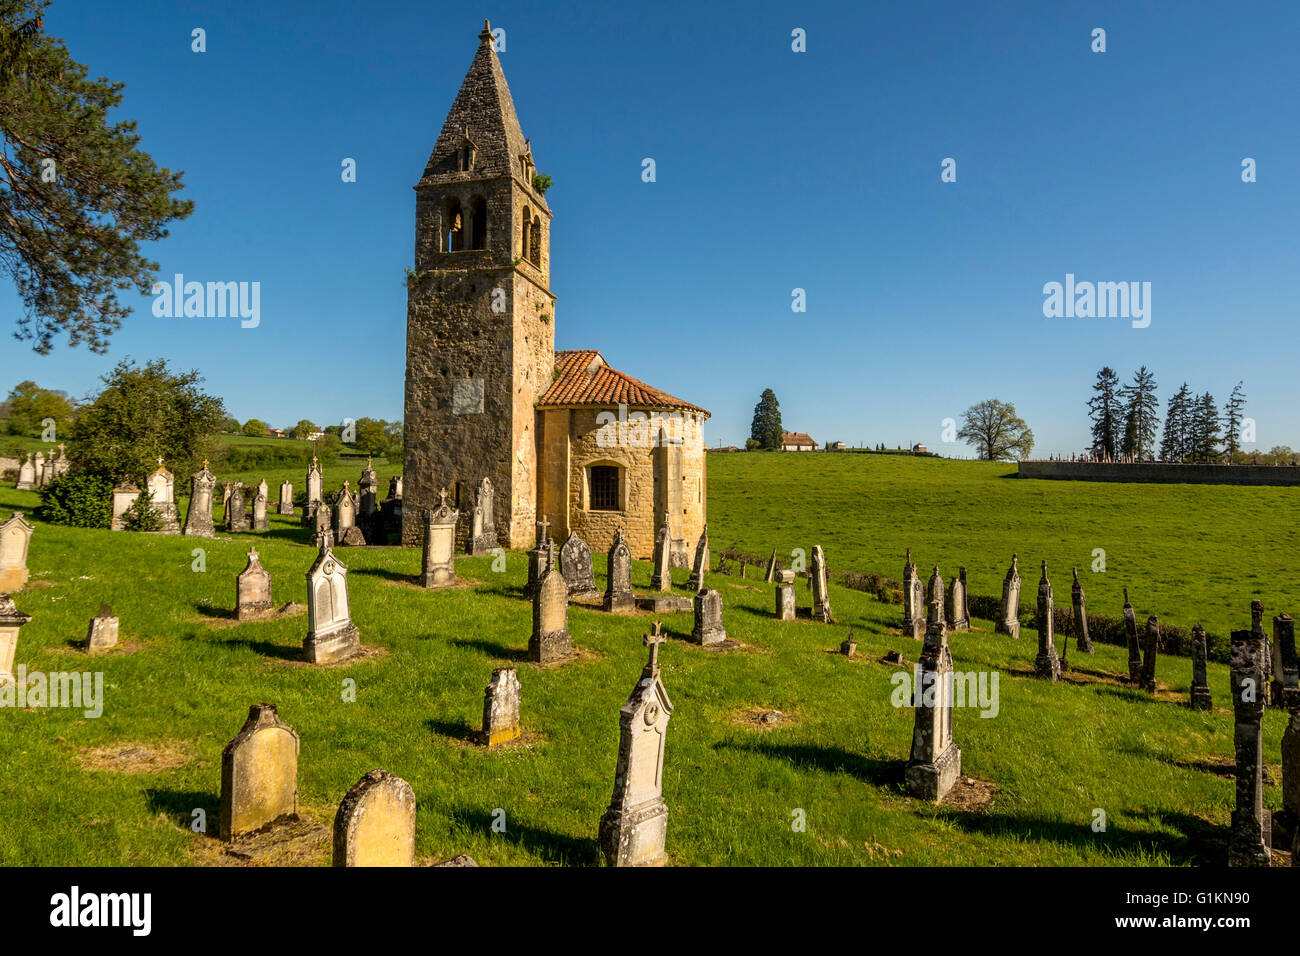 Eglise de Saint Benoit et cimetière de Saint-Maurice-les-Chateauneuf. Brionnais région. Saône et Loire. France Banque D'Images